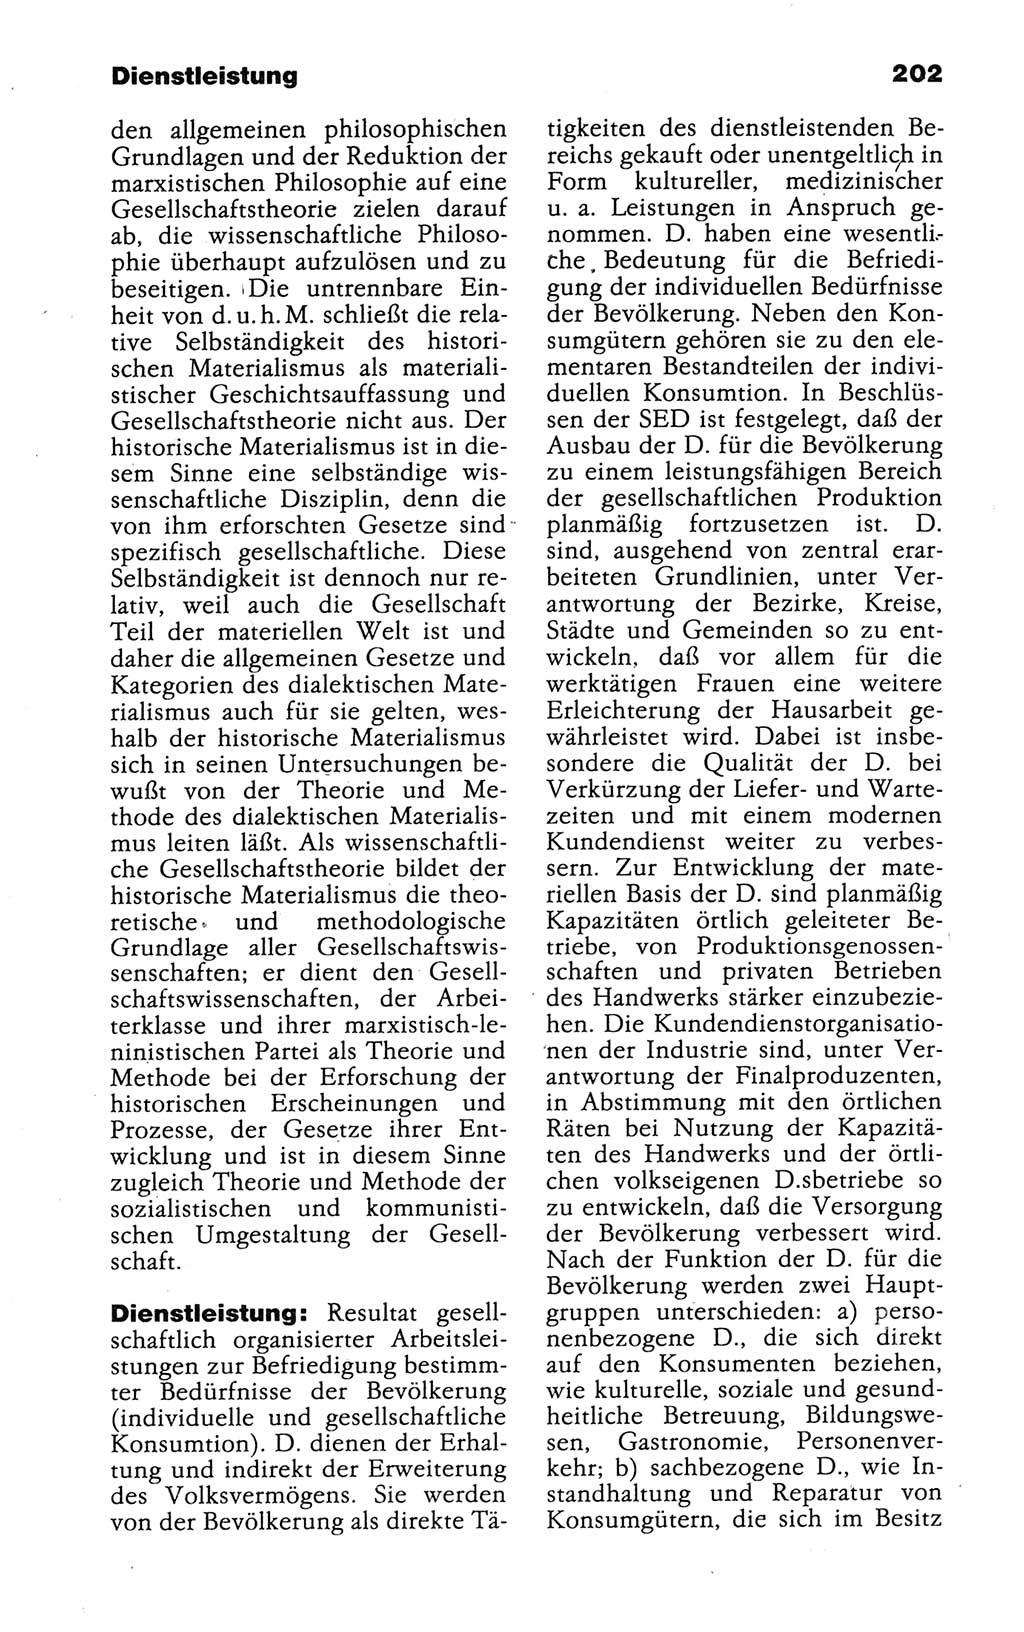 Kleines politisches Wörterbuch [Deutsche Demokratische Republik (DDR)] 1988, Seite 202 (Kl. pol. Wb. DDR 1988, S. 202)